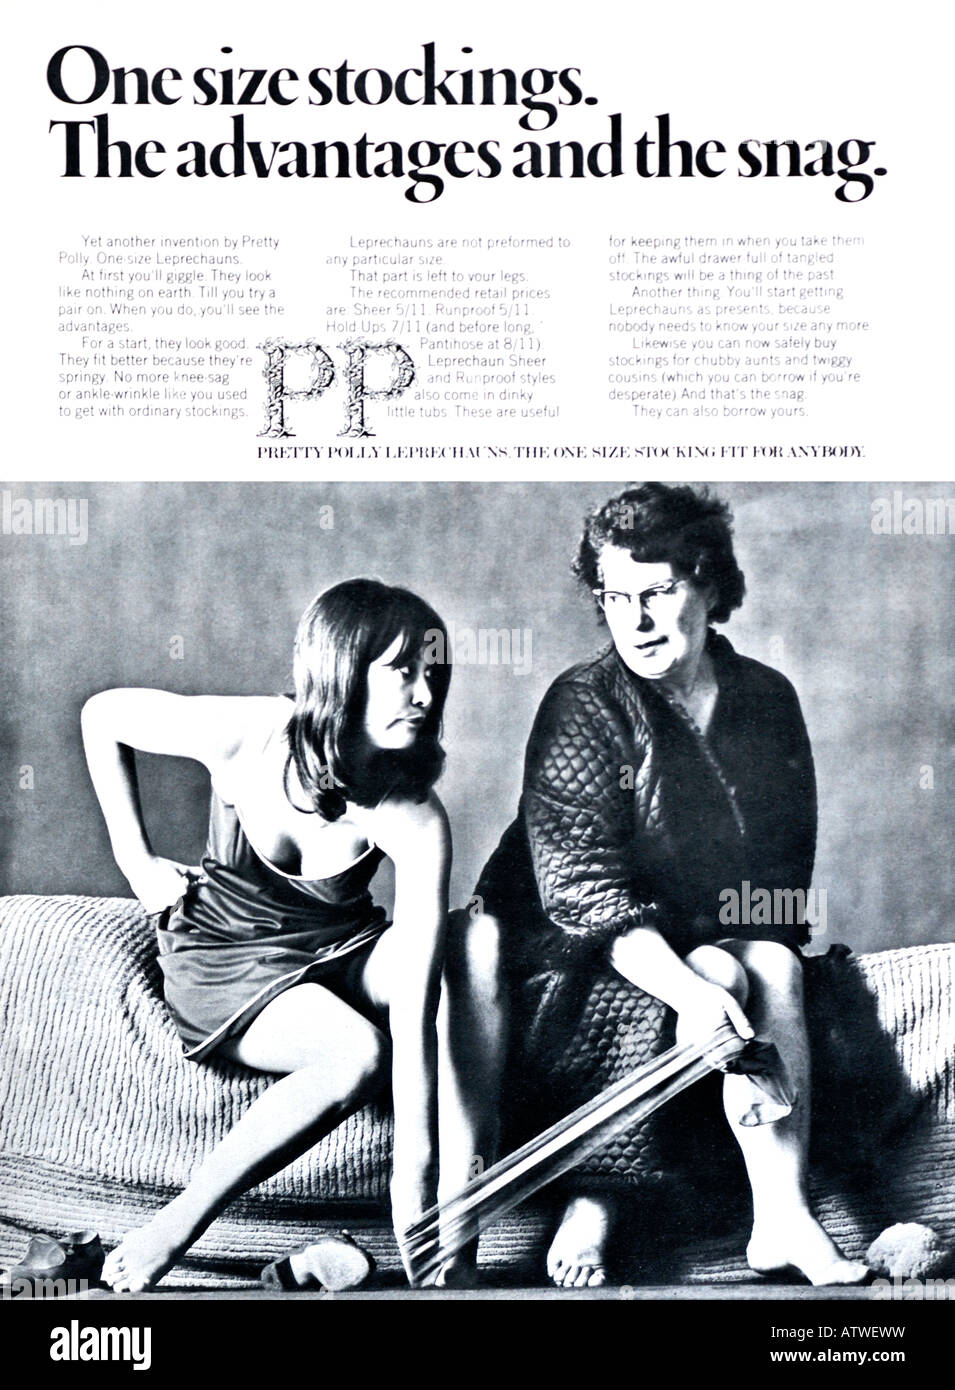 1960er Jahre Nova Magazin Oktober 1968 Werbung für Pretty Polly Kobolde Einheitsgröße Strümpfe für redaktionelle Verwendung nur Stockfoto